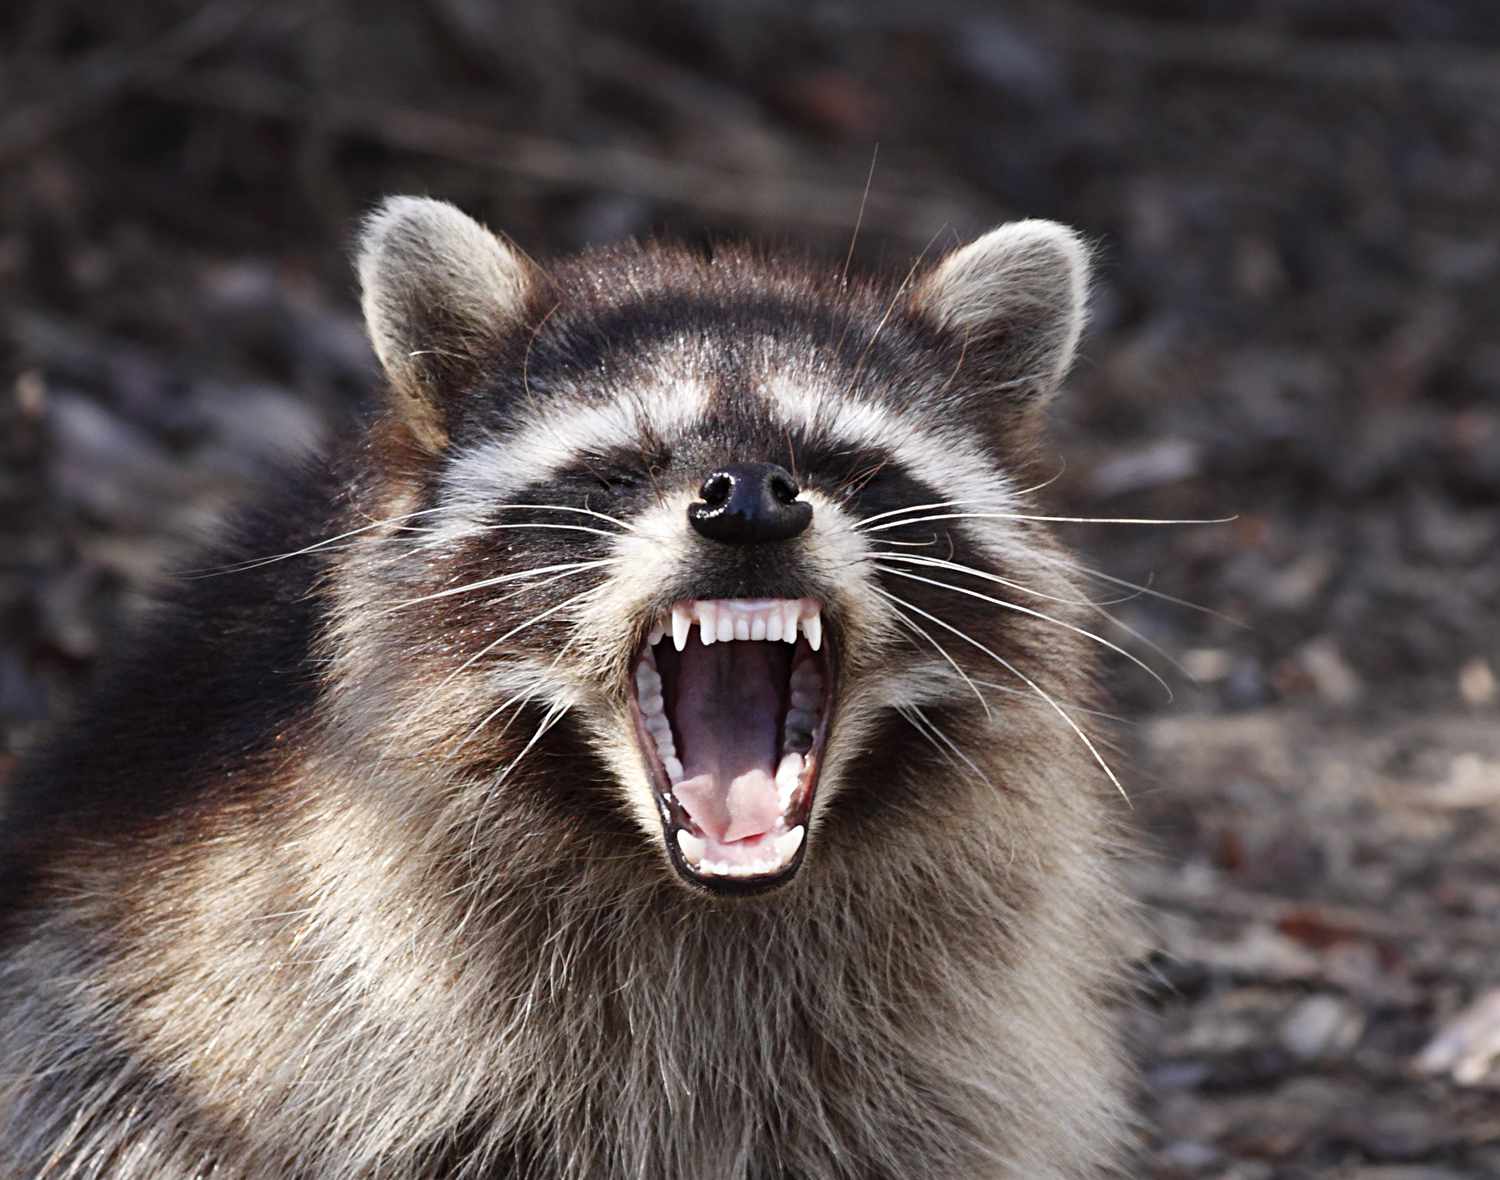 Un raton laveur territorial porte agressivement ses dents pour faire fuir toute menace.